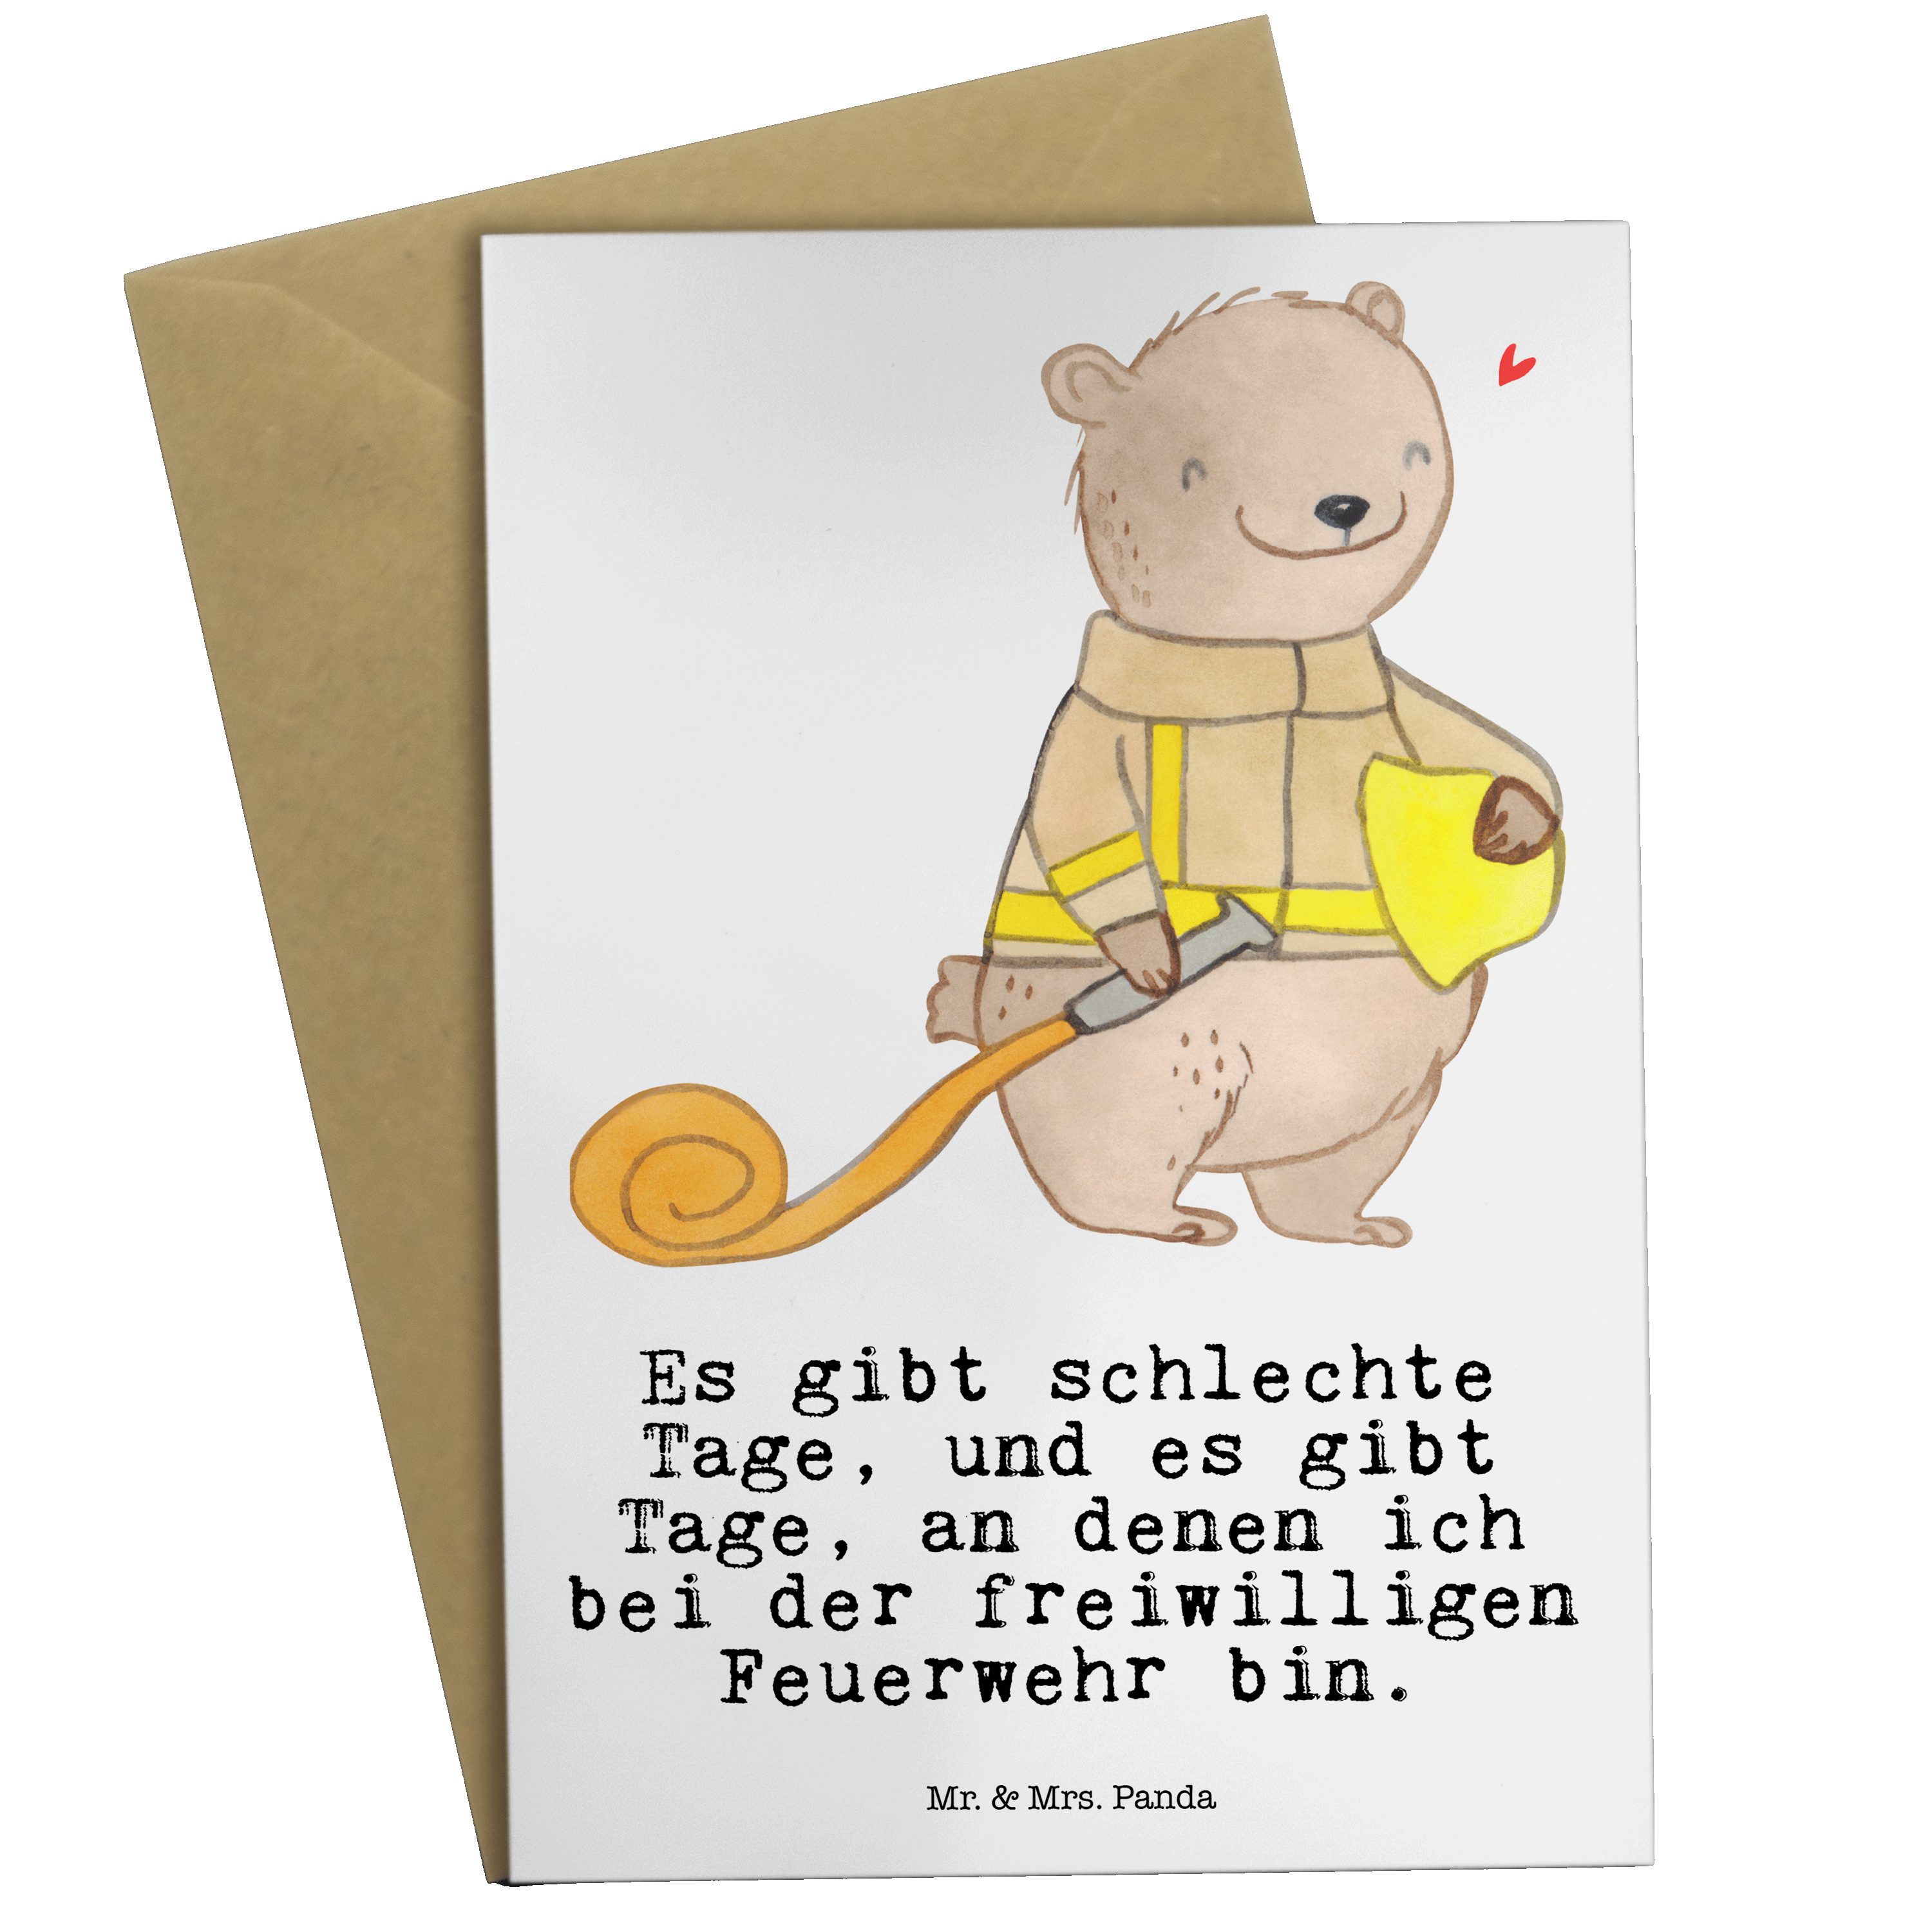 Mr. & Mrs. Panda Grußkarte Bär Freiwillige Feuerwehr Tage - Weiß - Geschenk, Geburtstagskarte, F